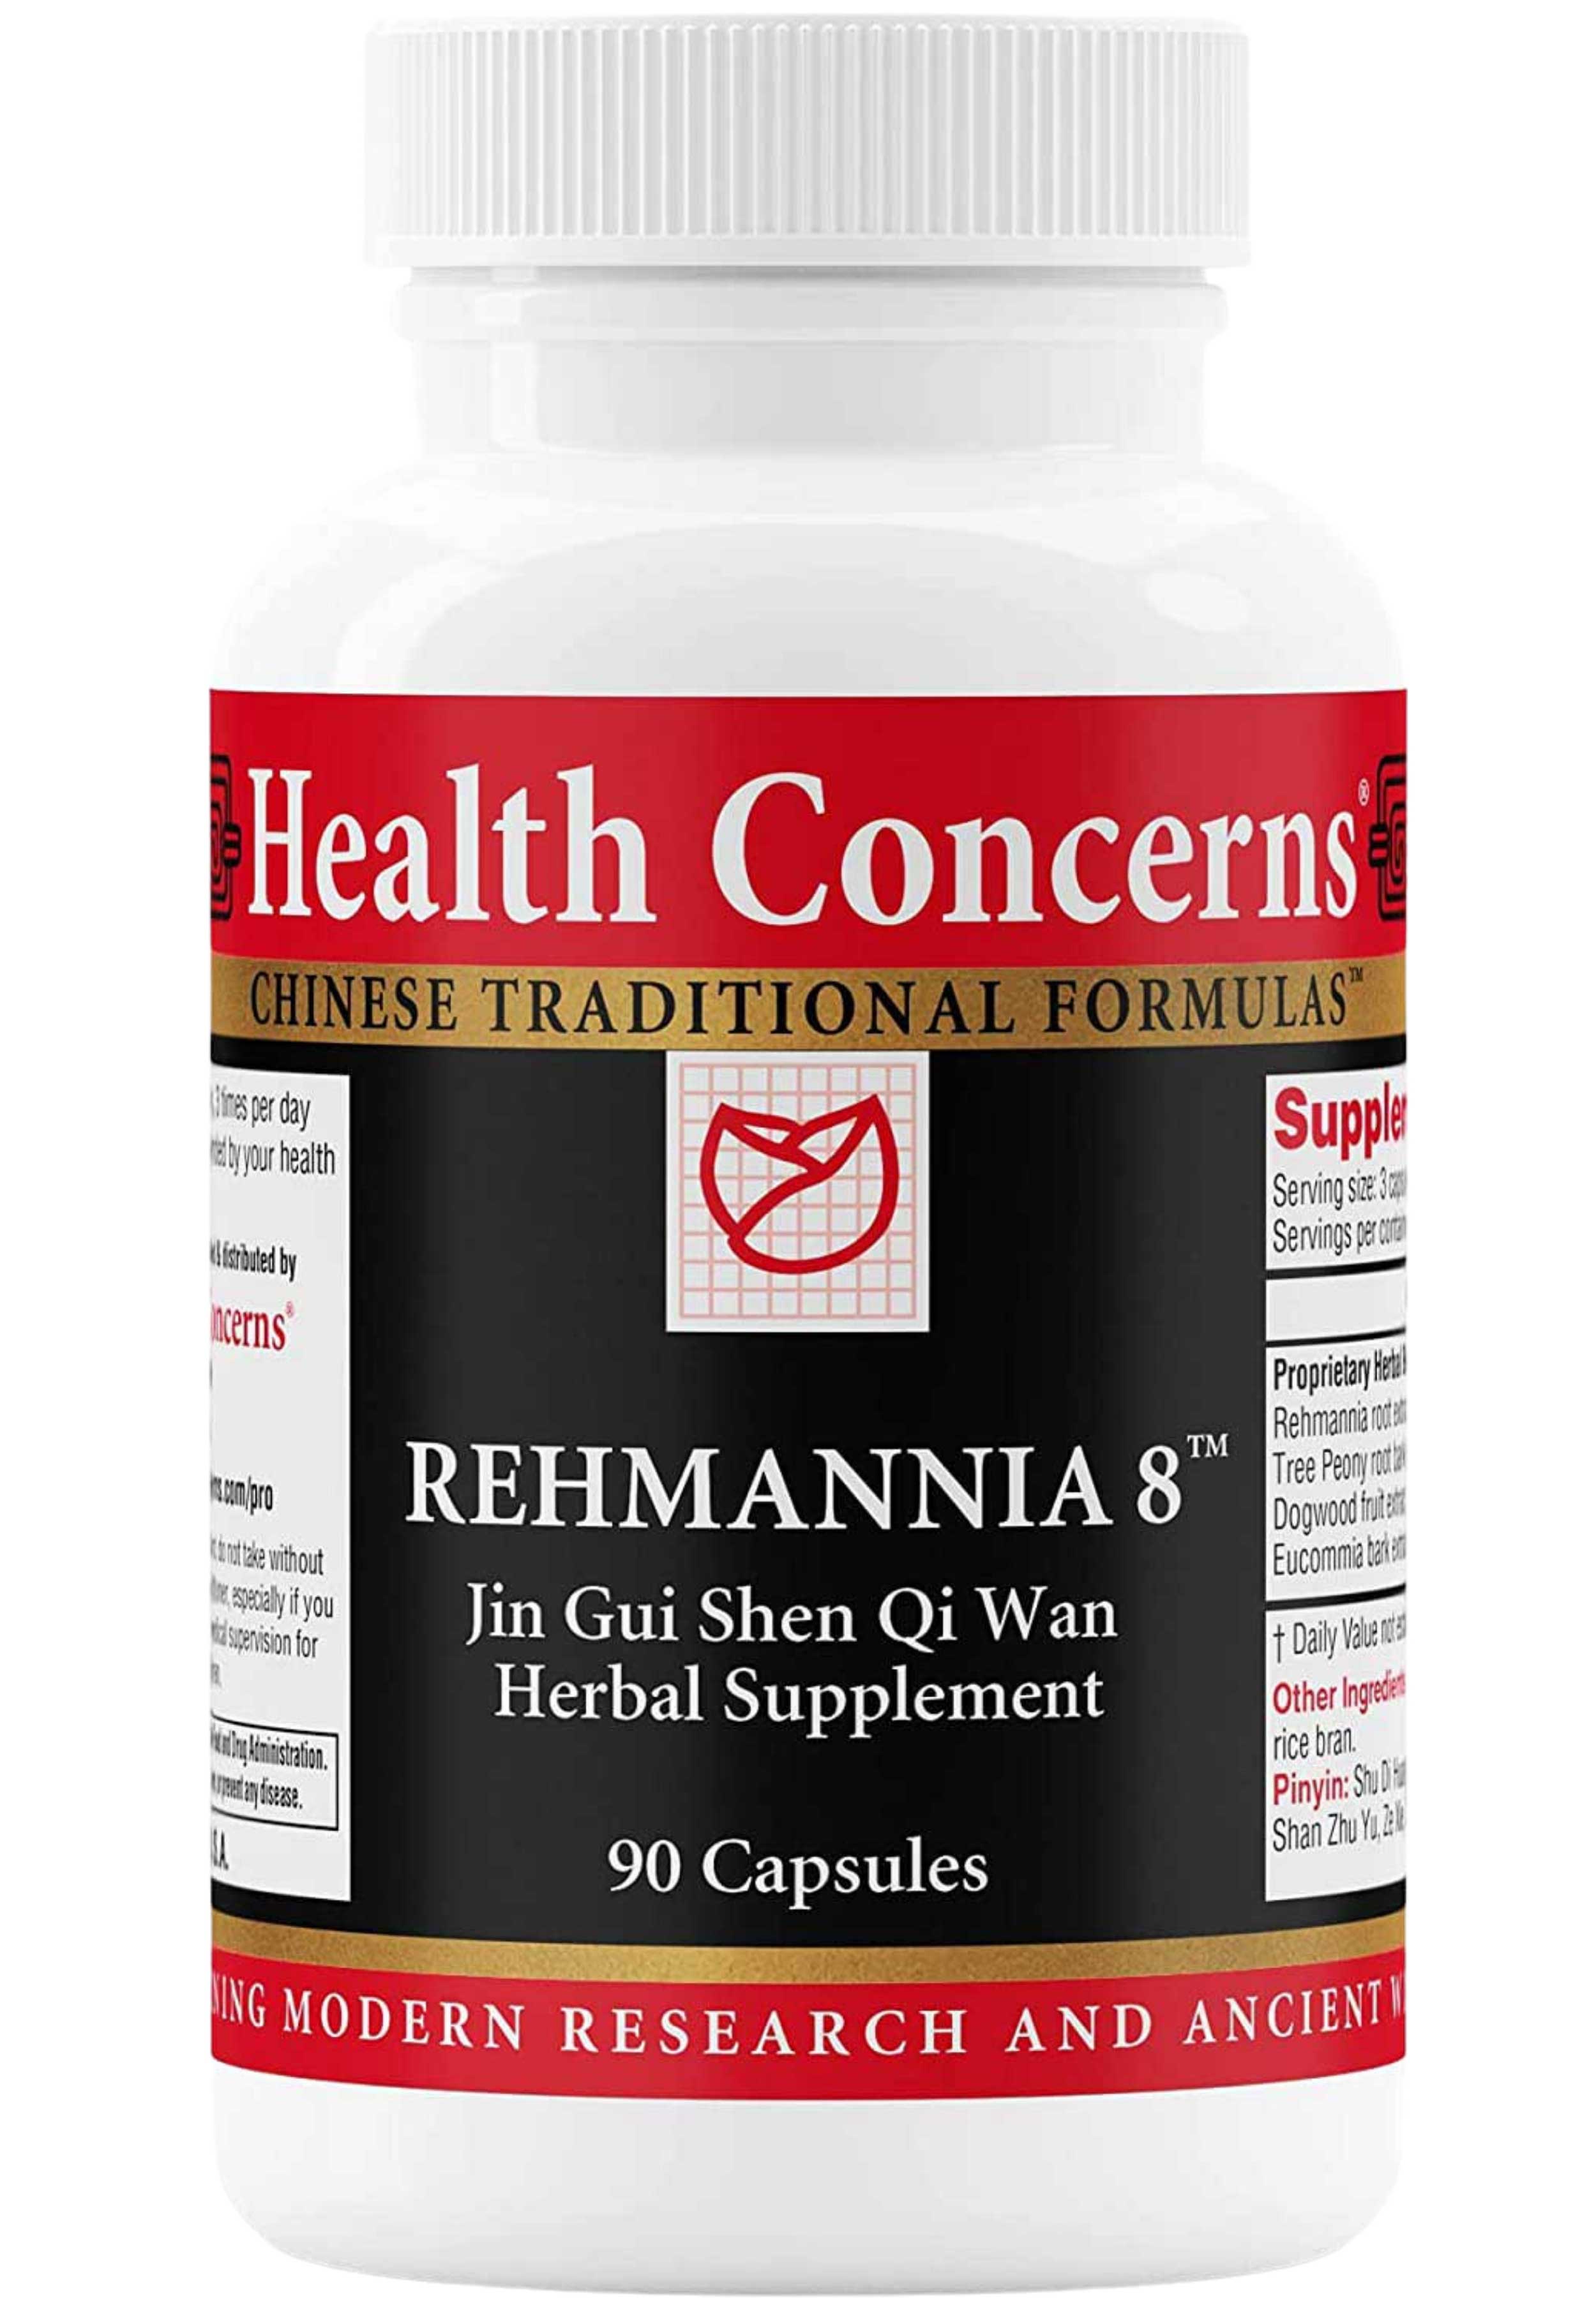 Health Concerns Rehmannia 8